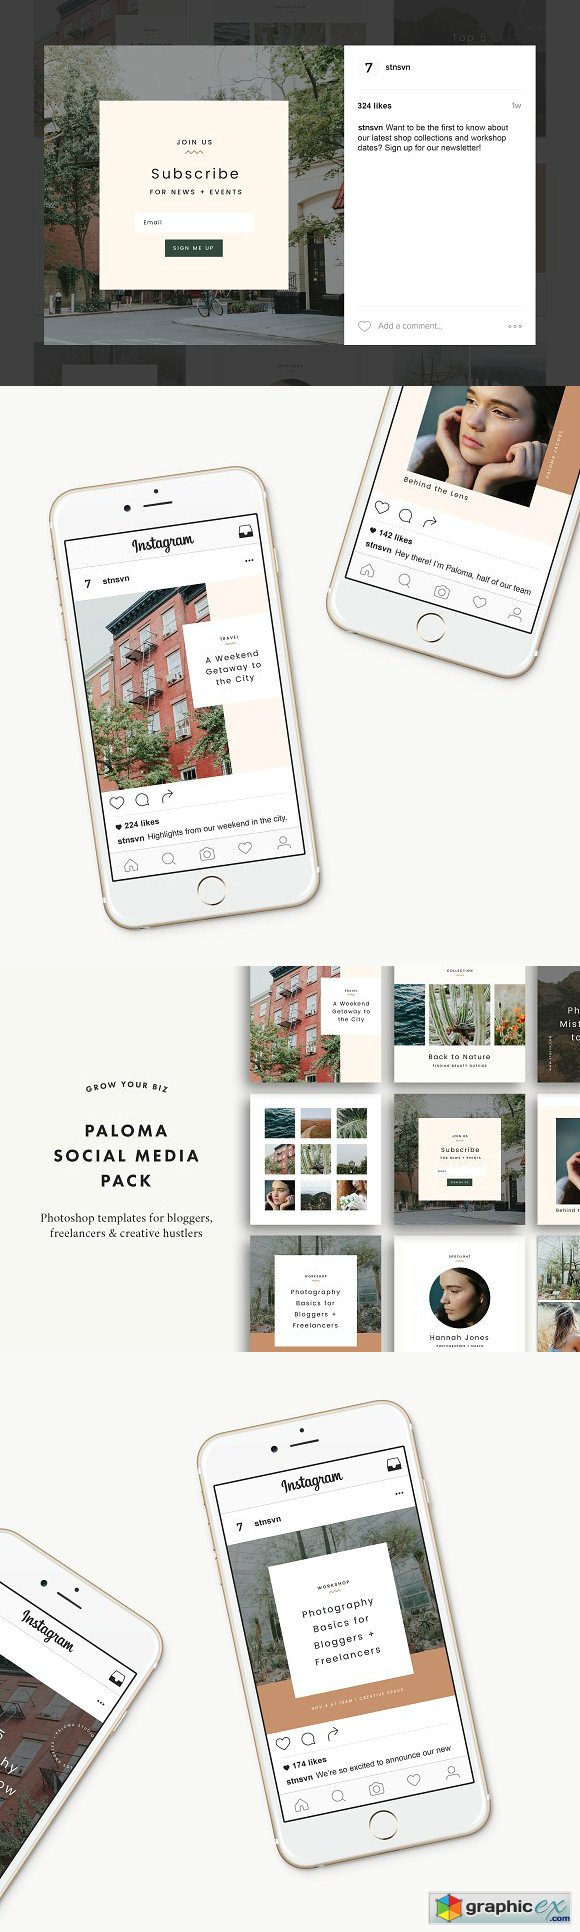 Paloma Social Pack